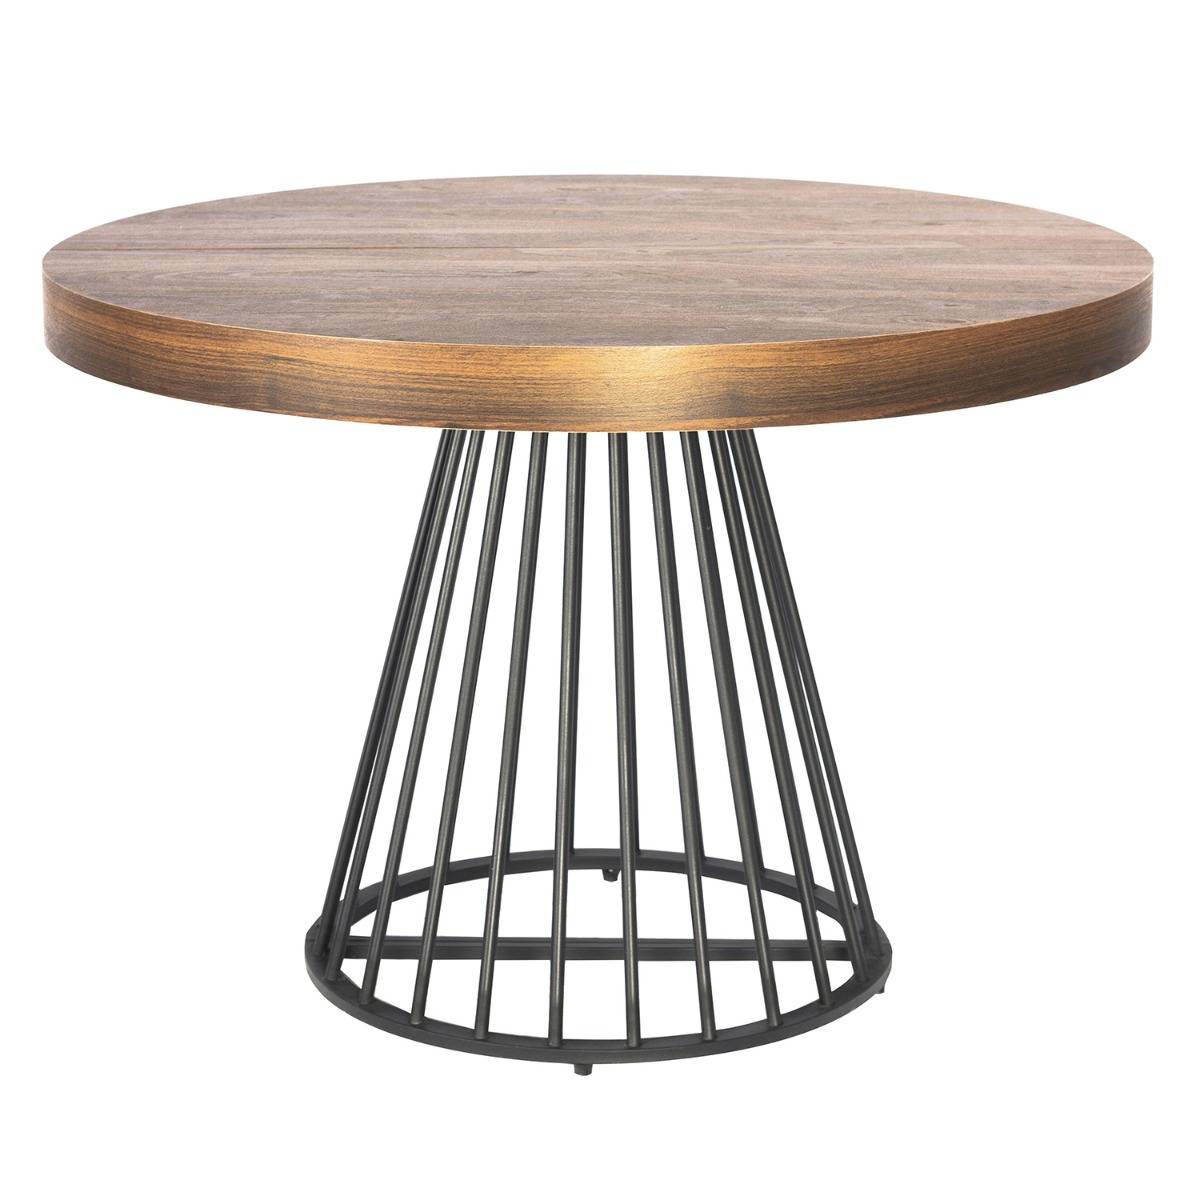 Table à manger pliable bois chêne clair et pieds marron Pedestali